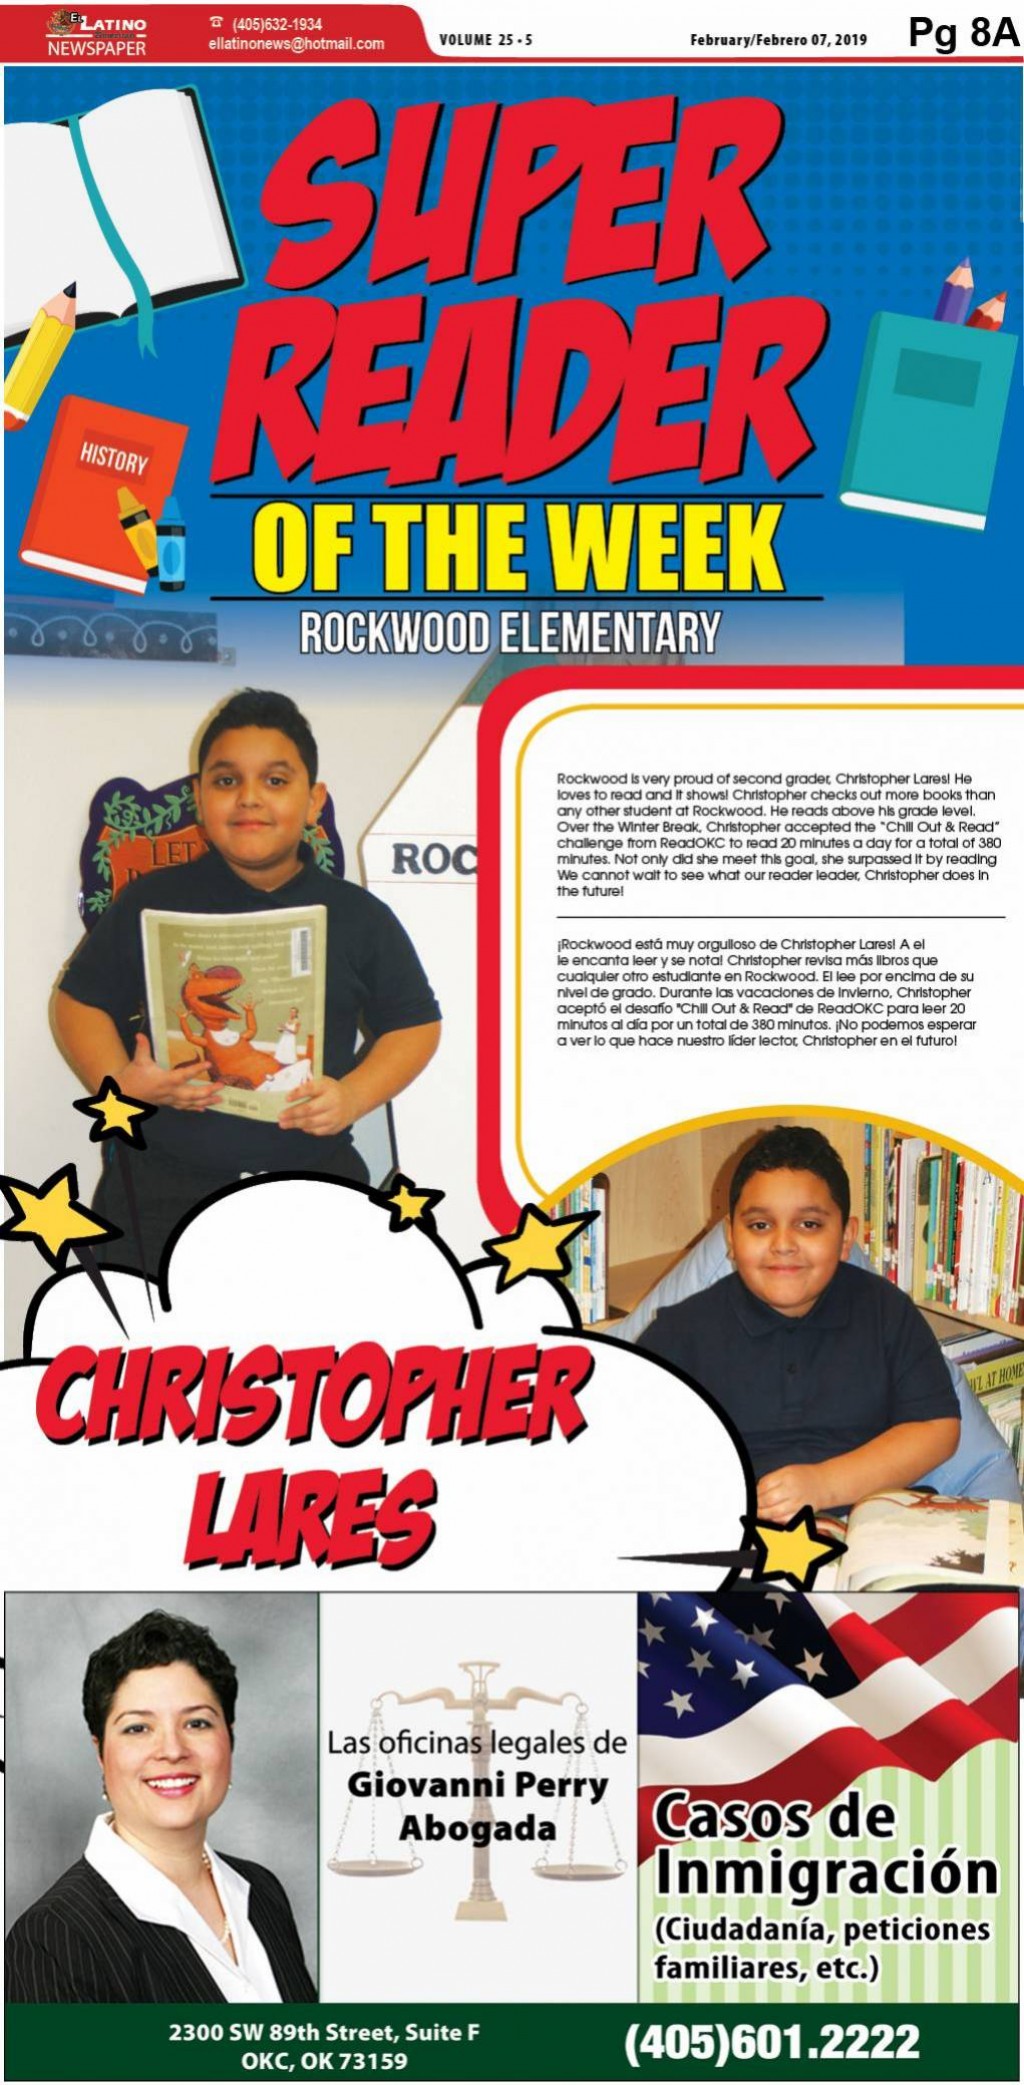 Super Reader of the Week: Christopher Lares